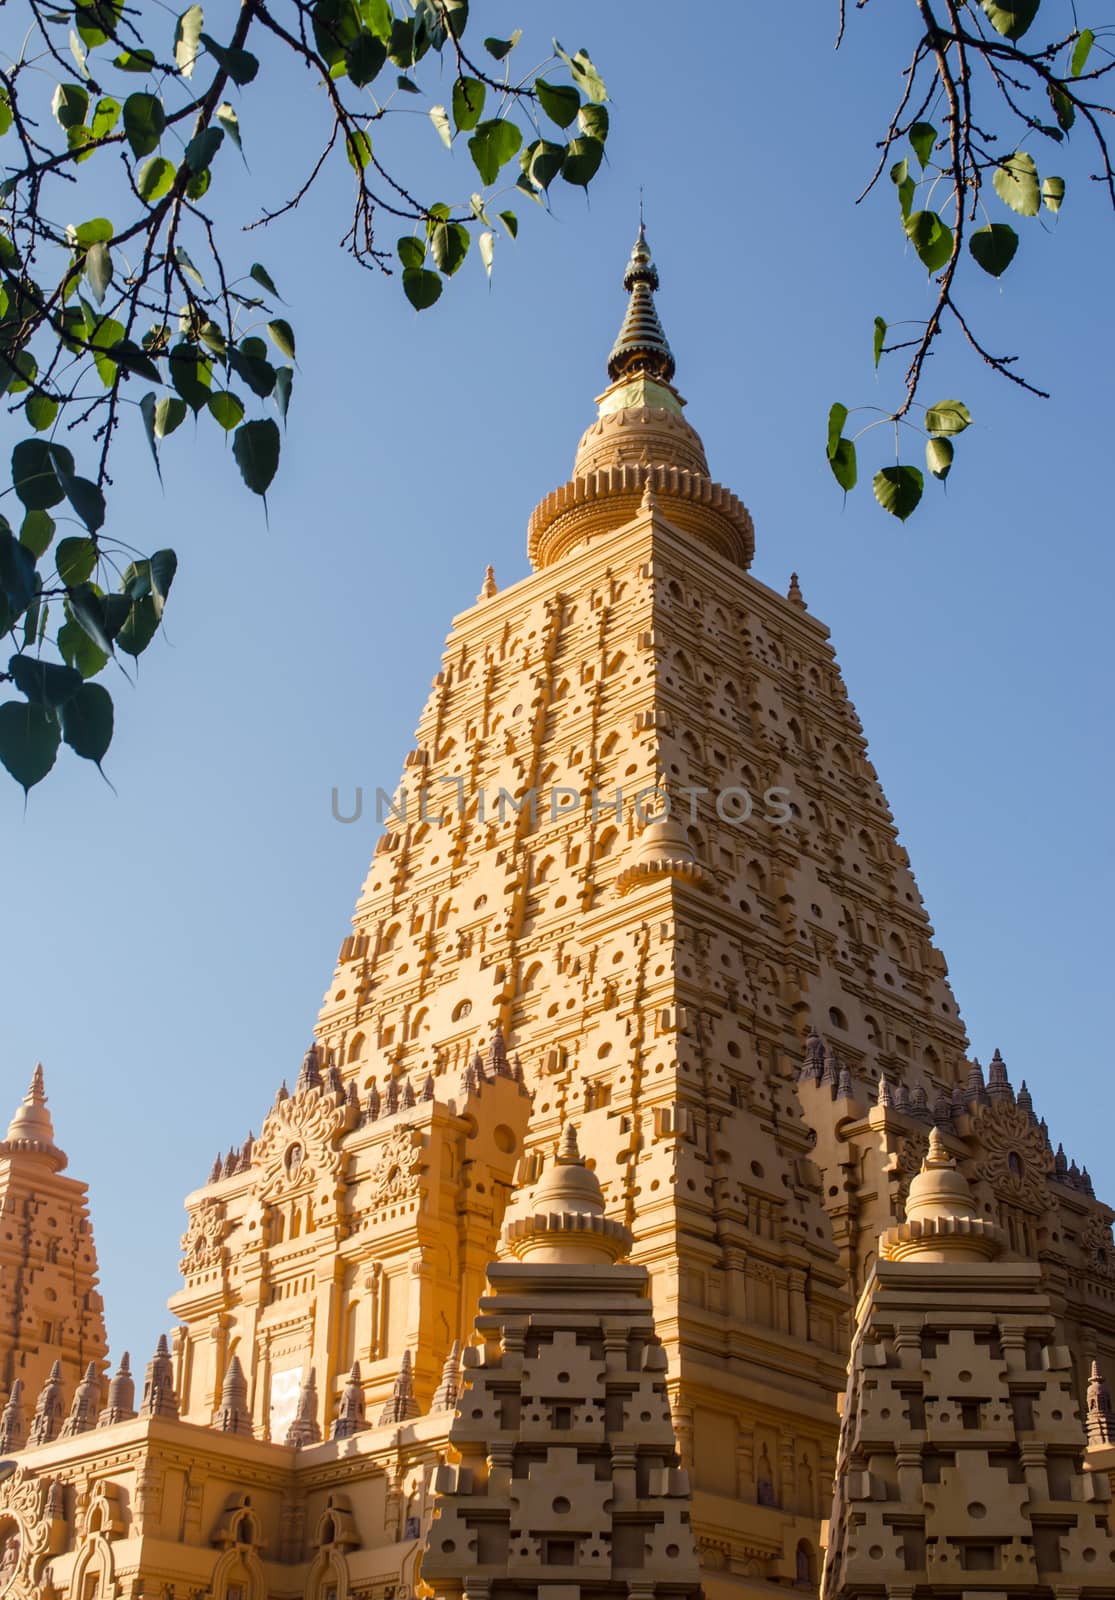 The Pagoda of Bago - Myanmar